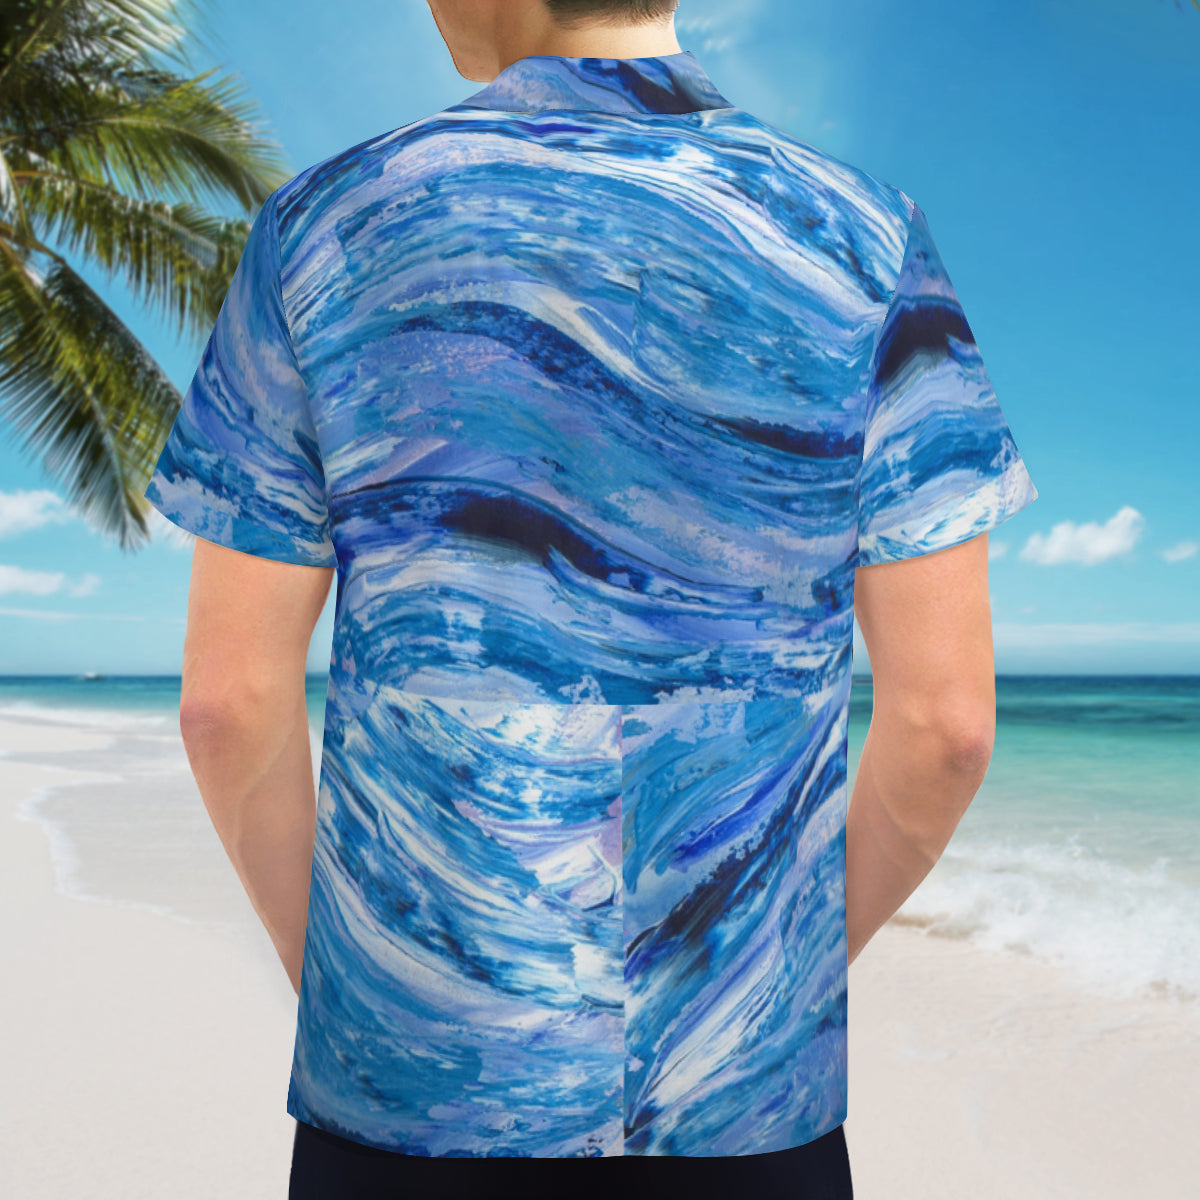 Hawaiin shirt - Rogue wave